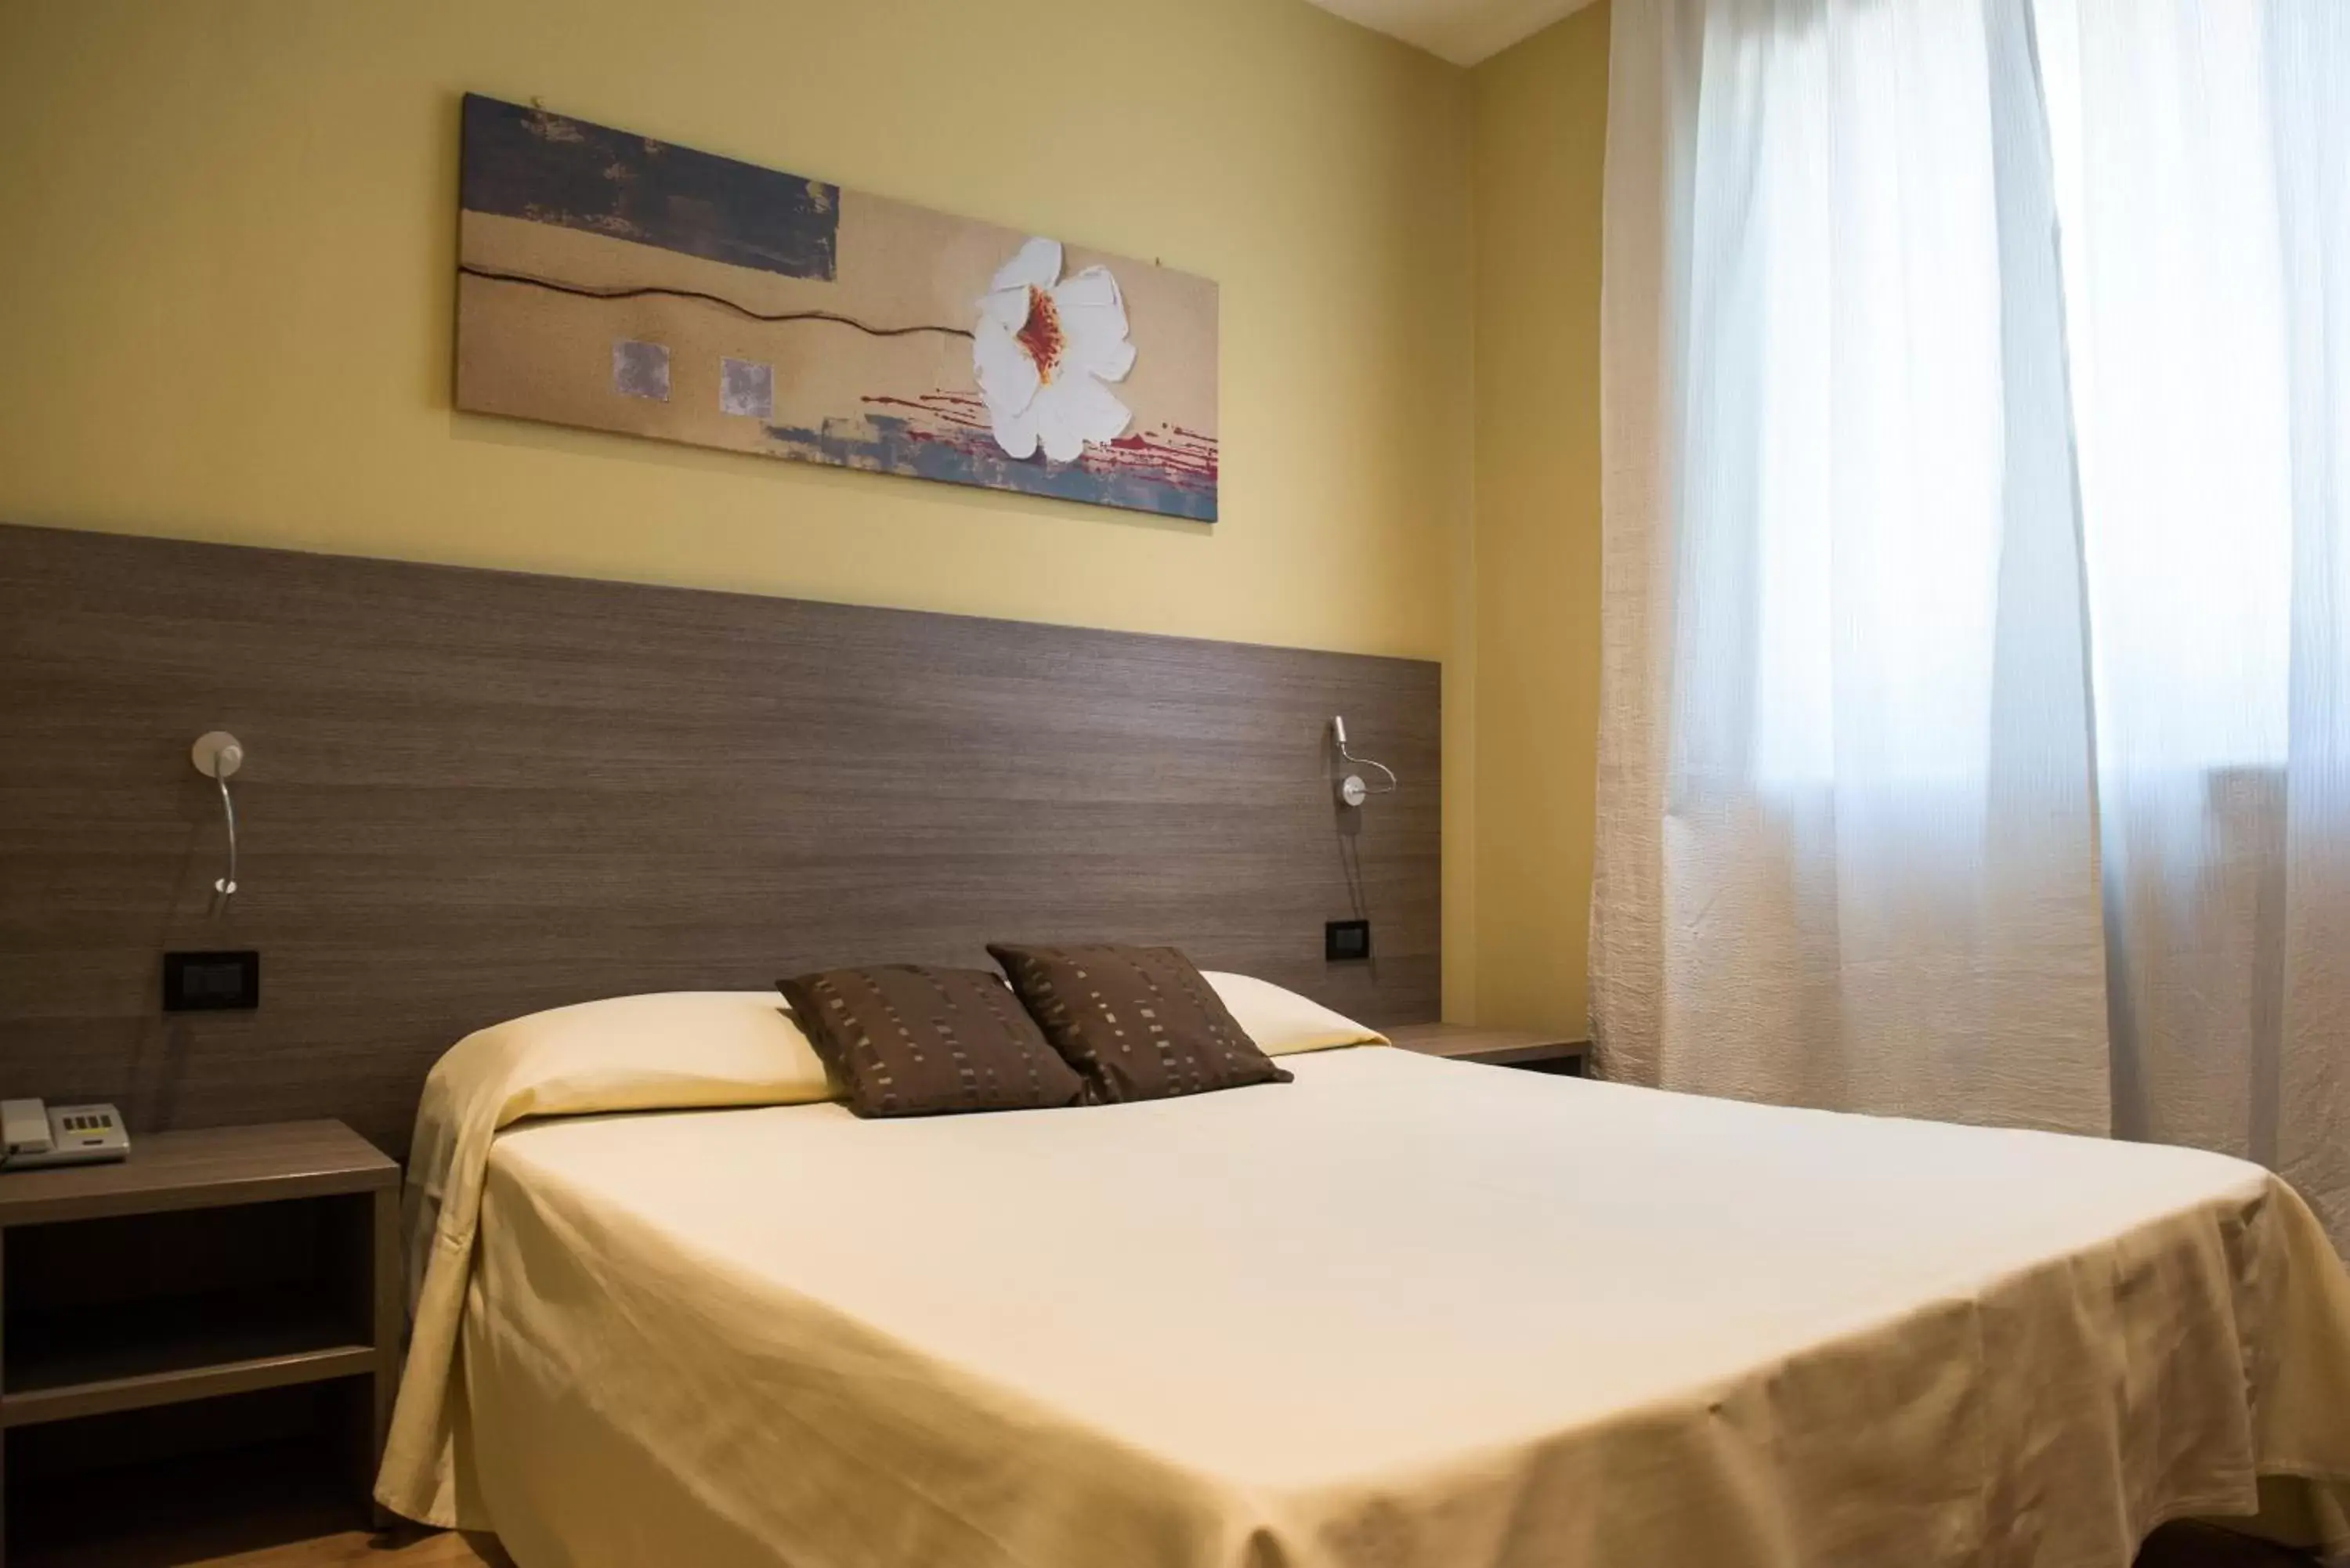 Bed, Room Photo in Albergo Grappolo D'oro